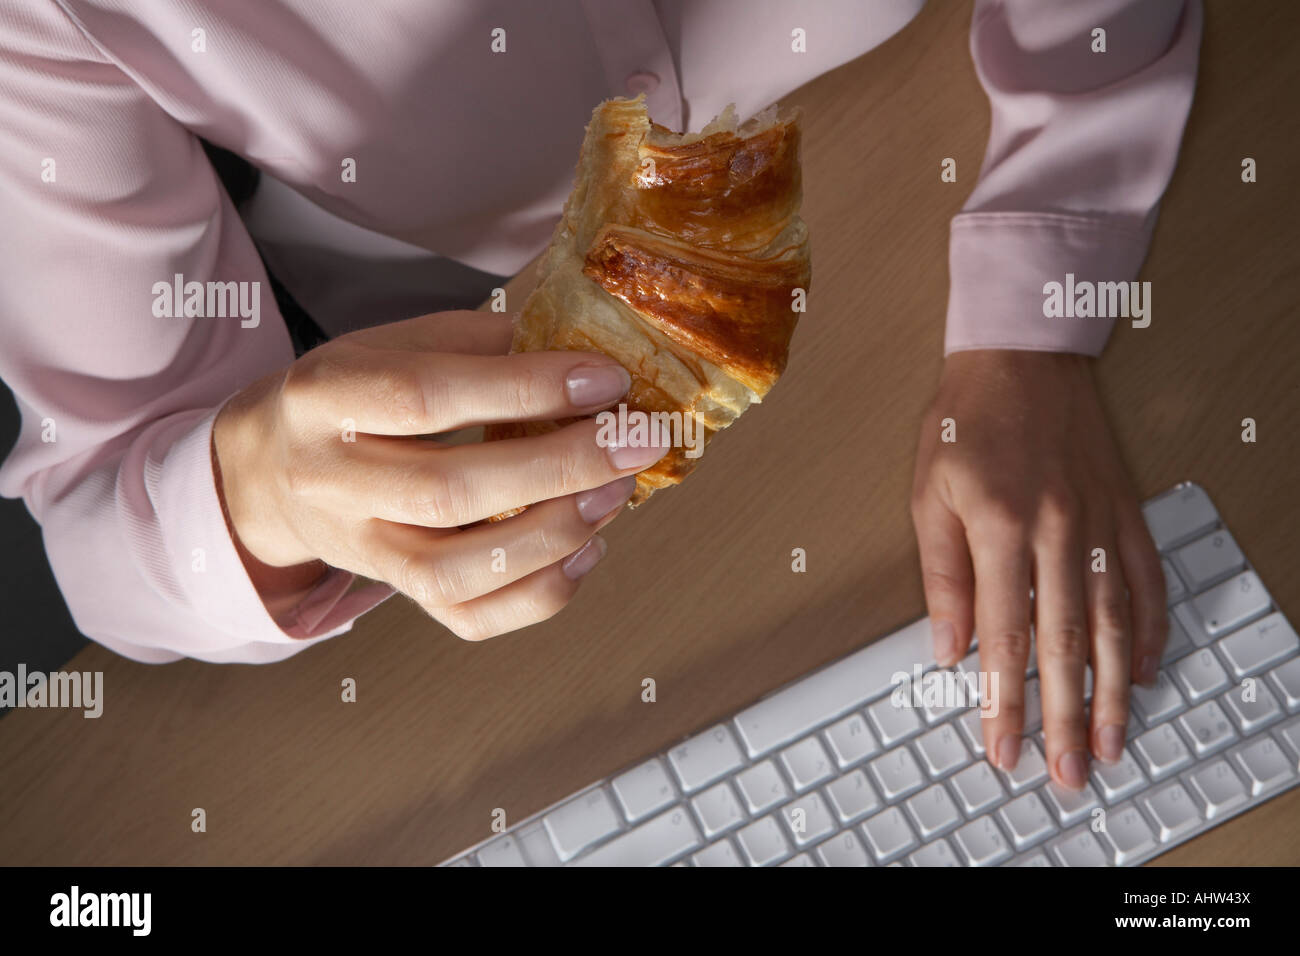 Frauenhand tippen und halten eine Croissant. Stockfoto